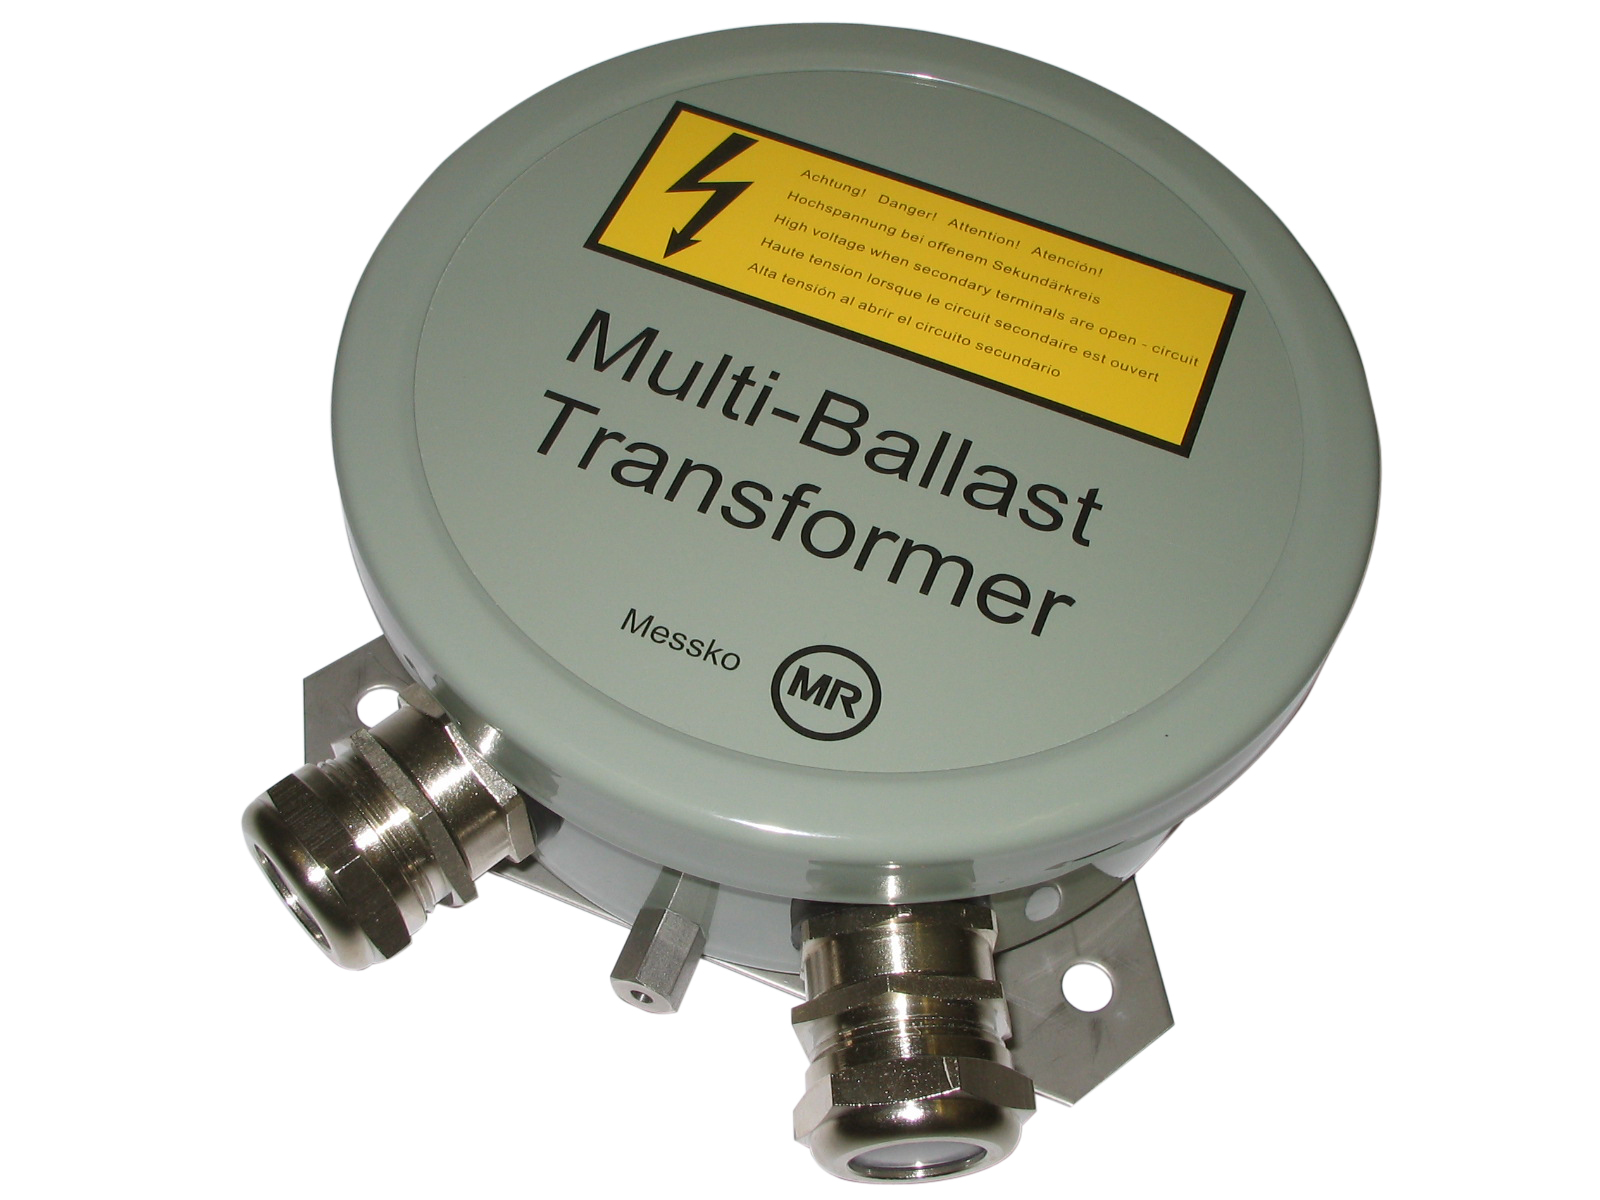 thermometer-acc multi ballast transformer